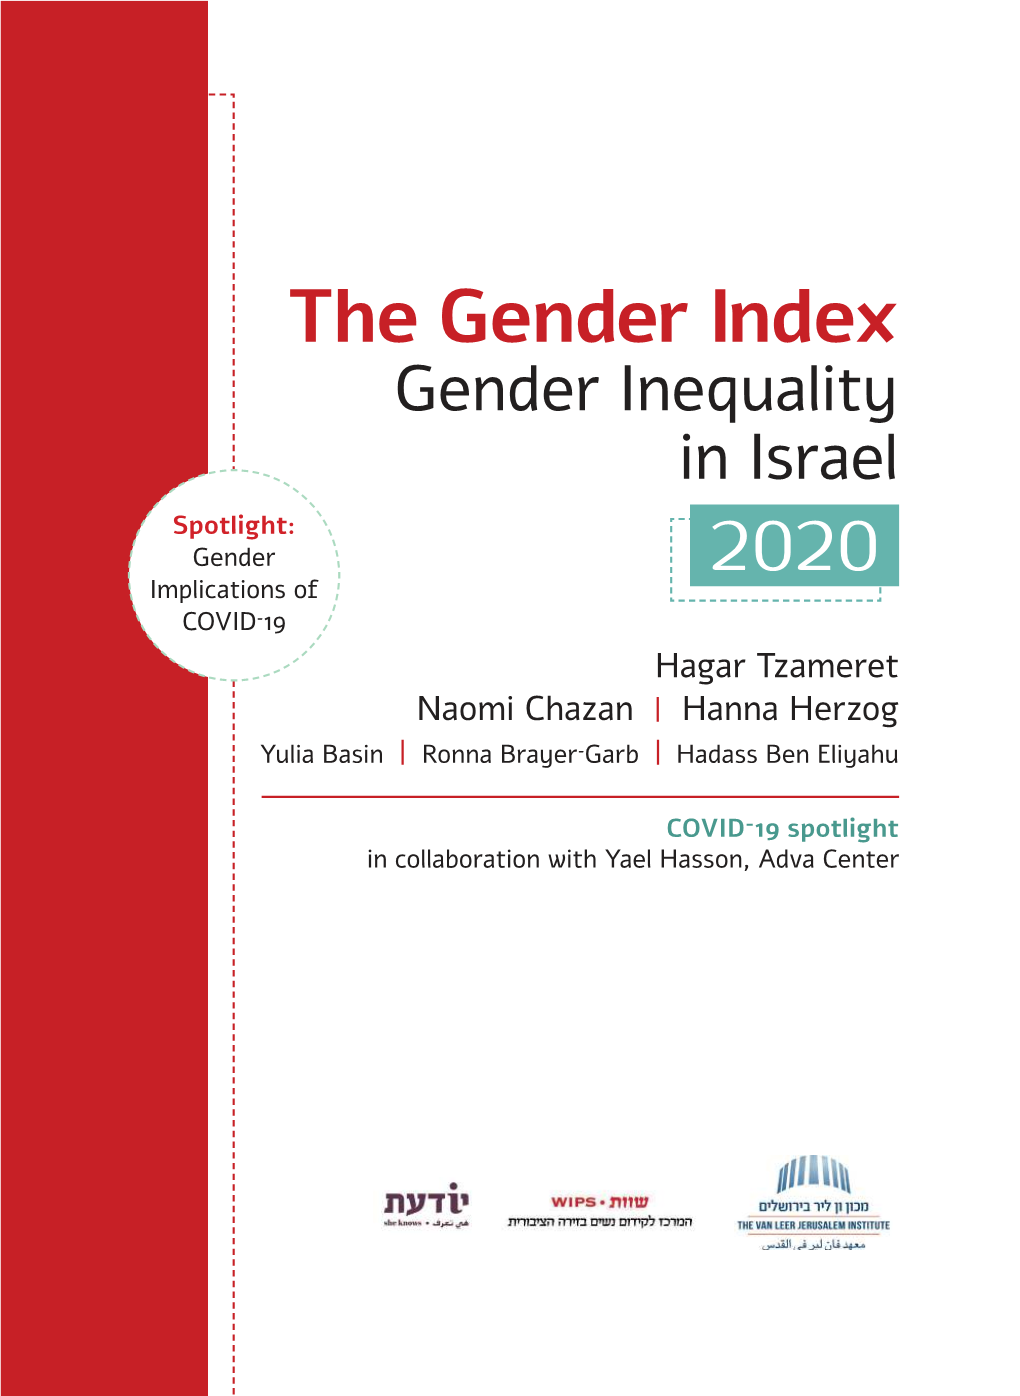 The Gender Index